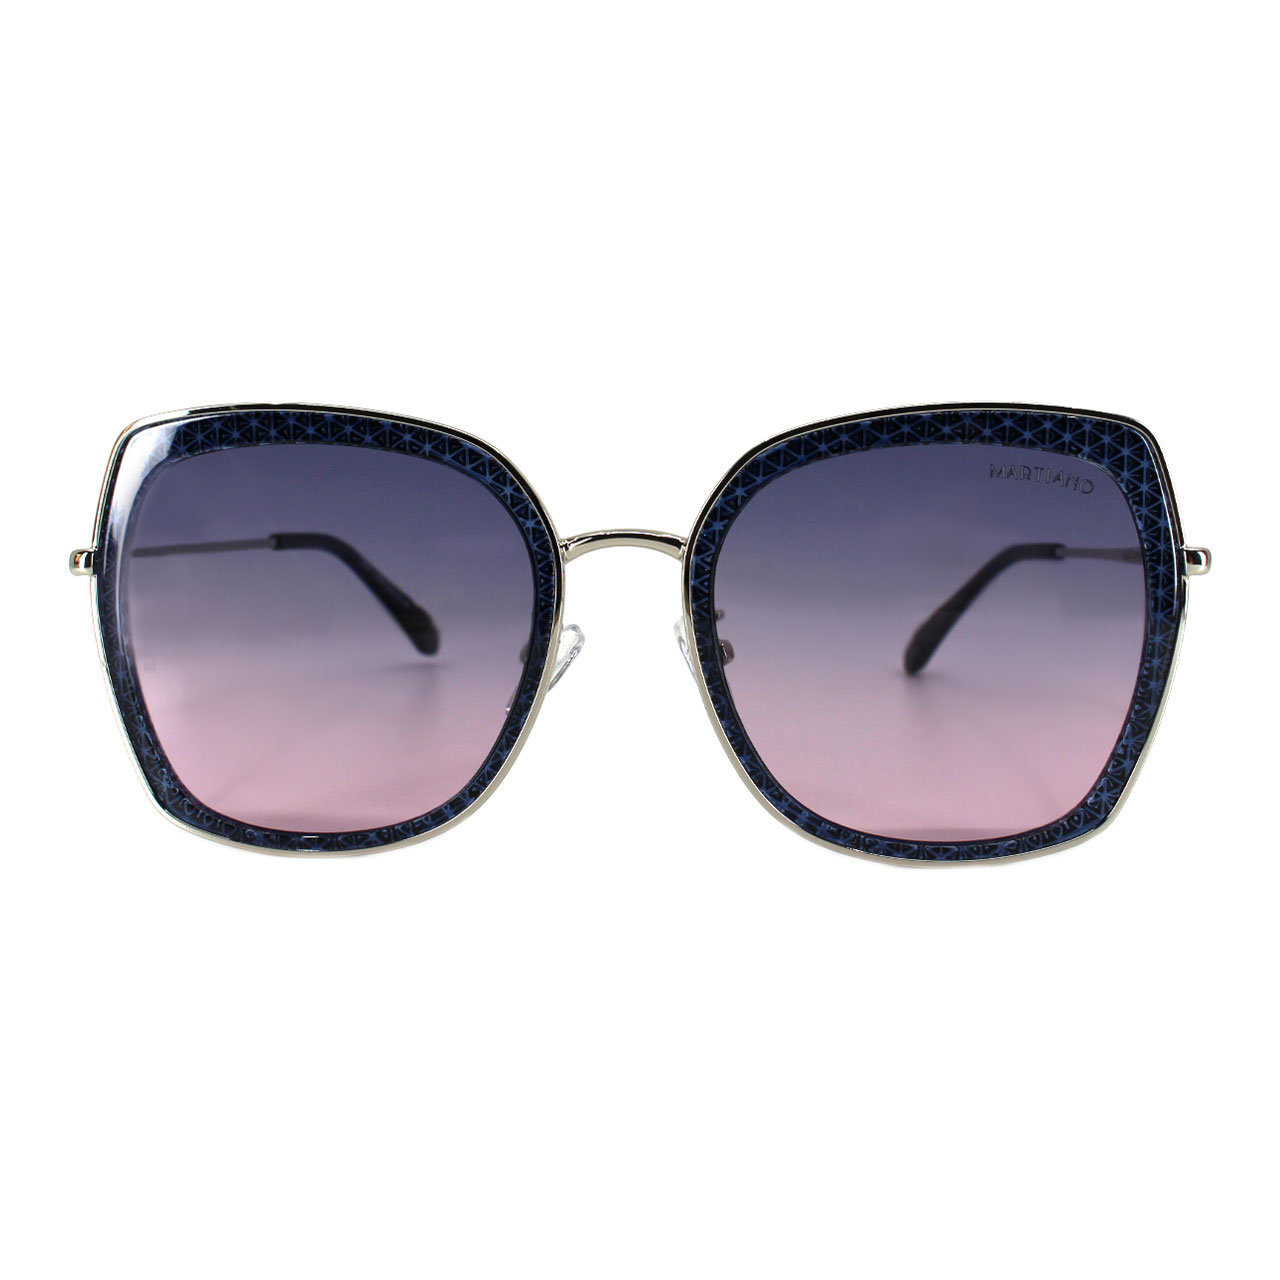 عینک آفتابی زنانه مارتیانو مدل 13027 C258